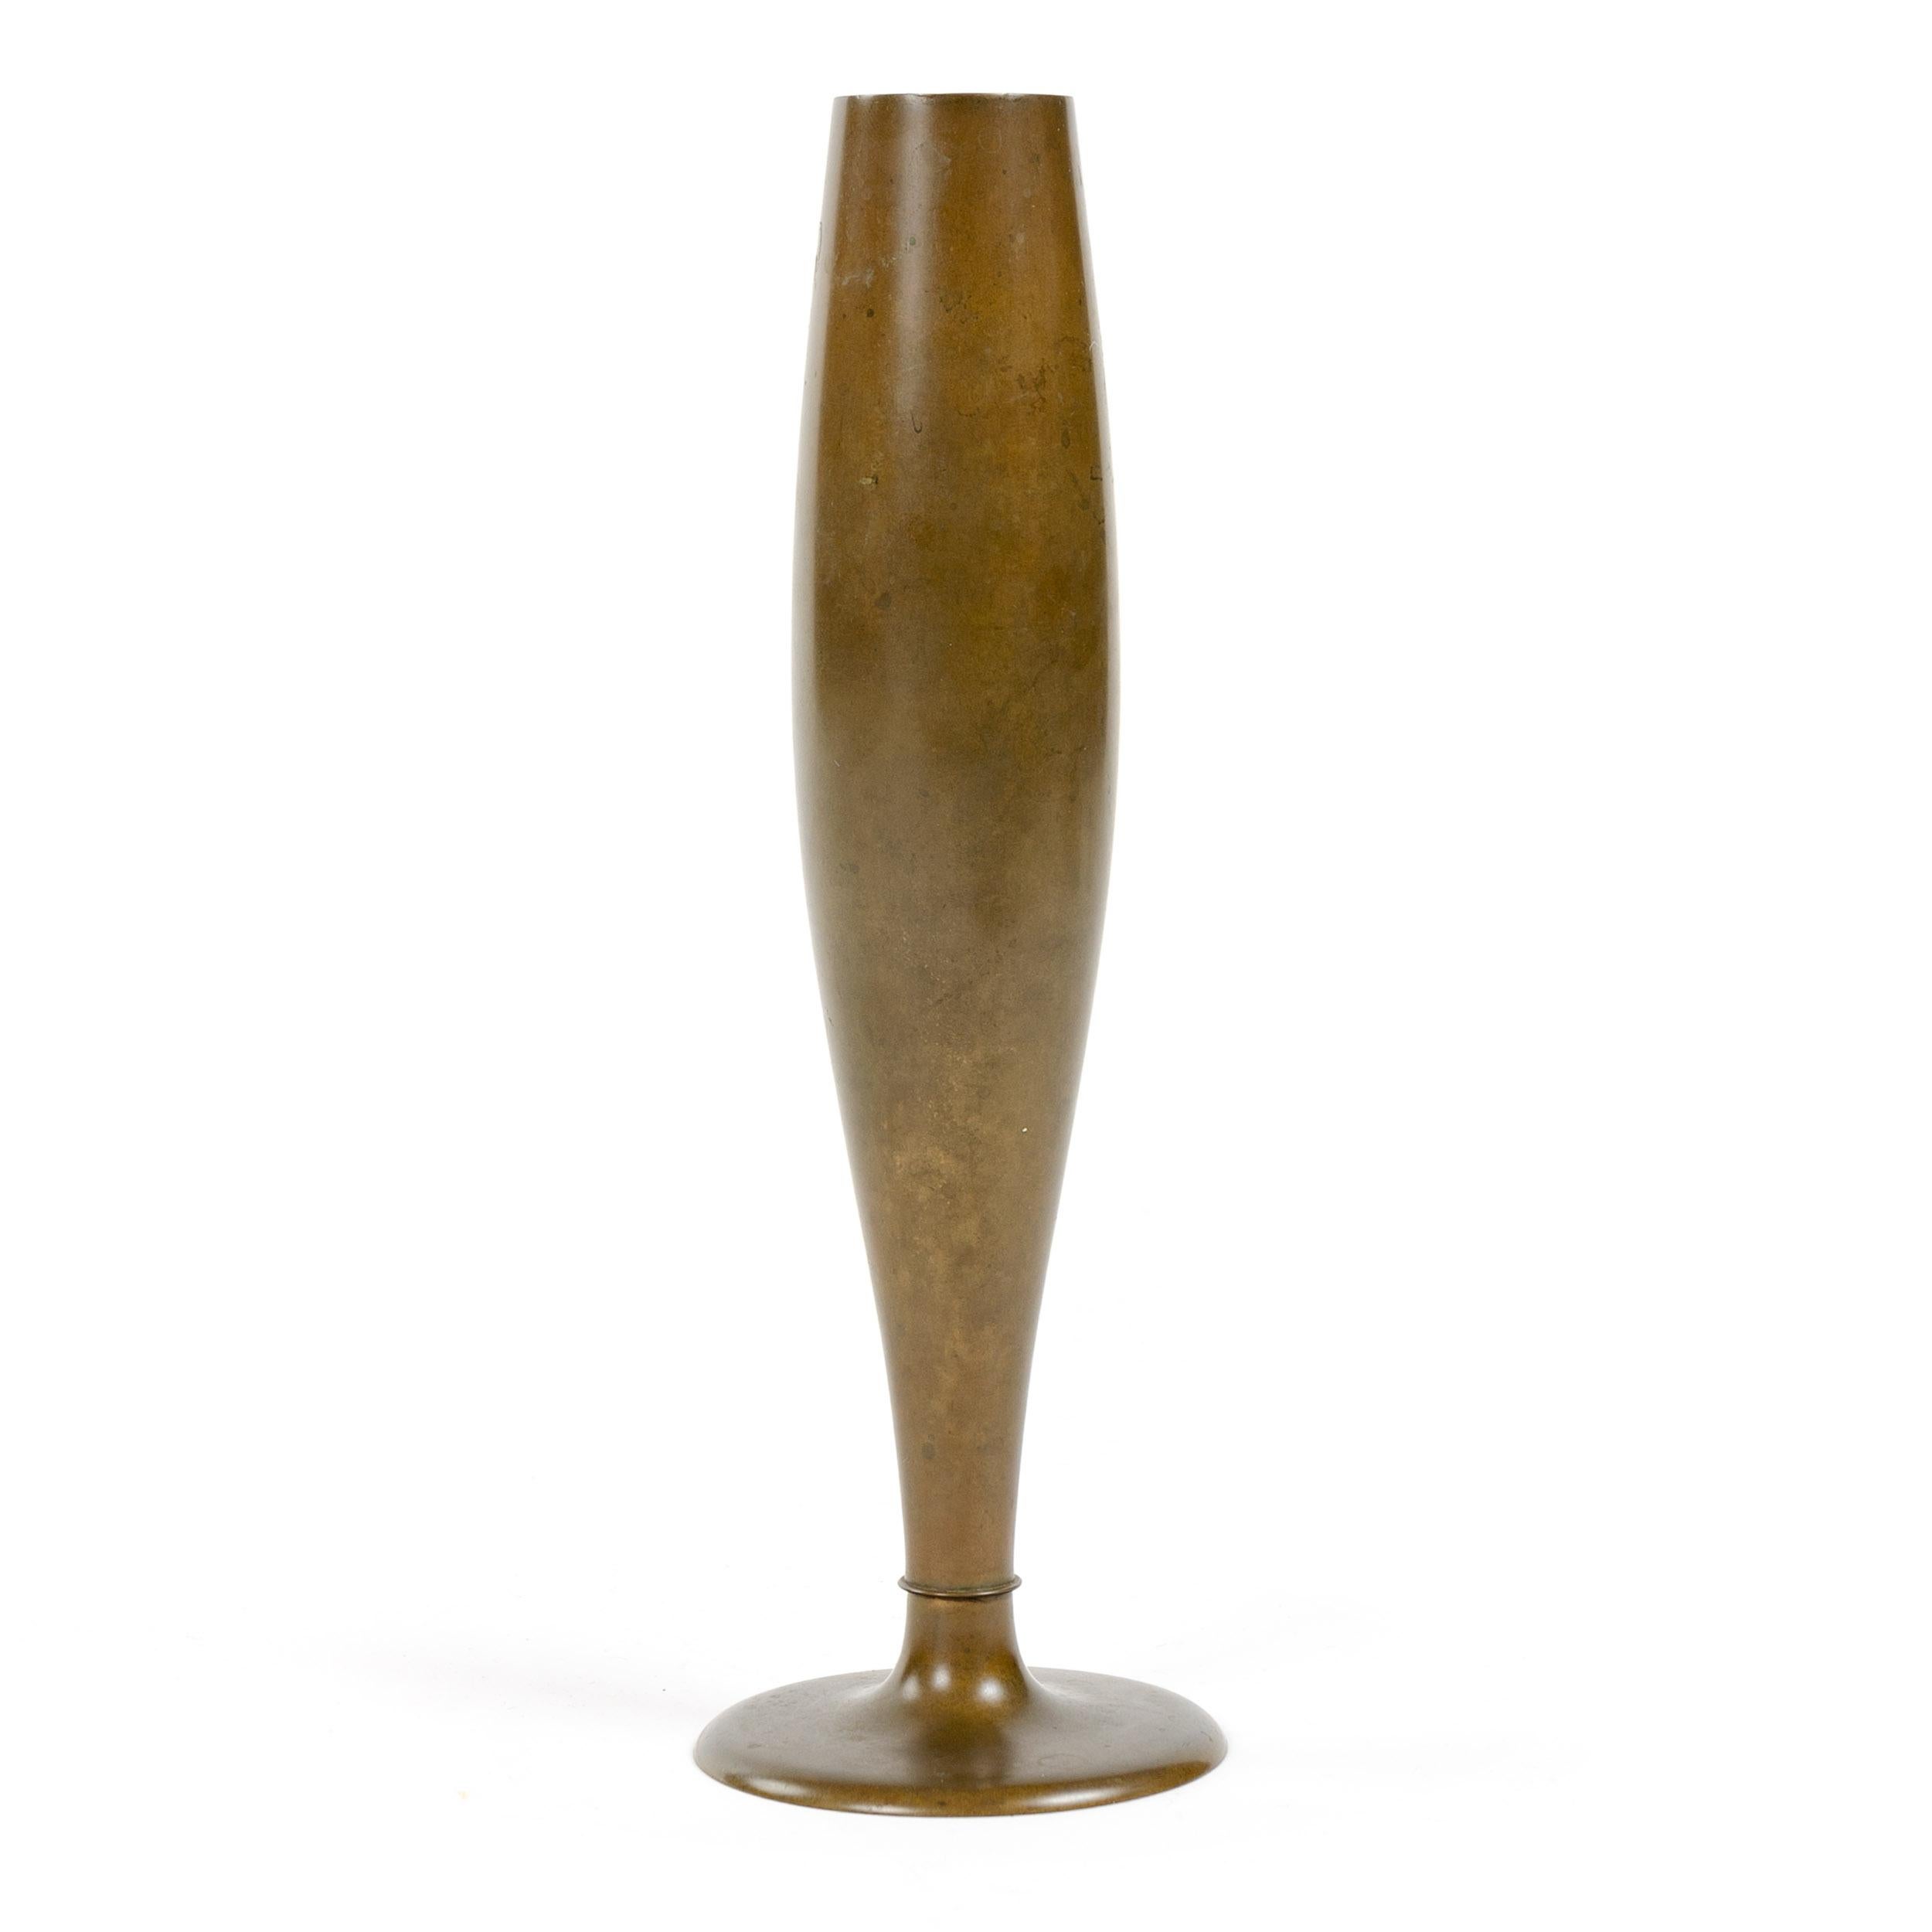 A slender bronze bud vase of fluid form having a warm patina.